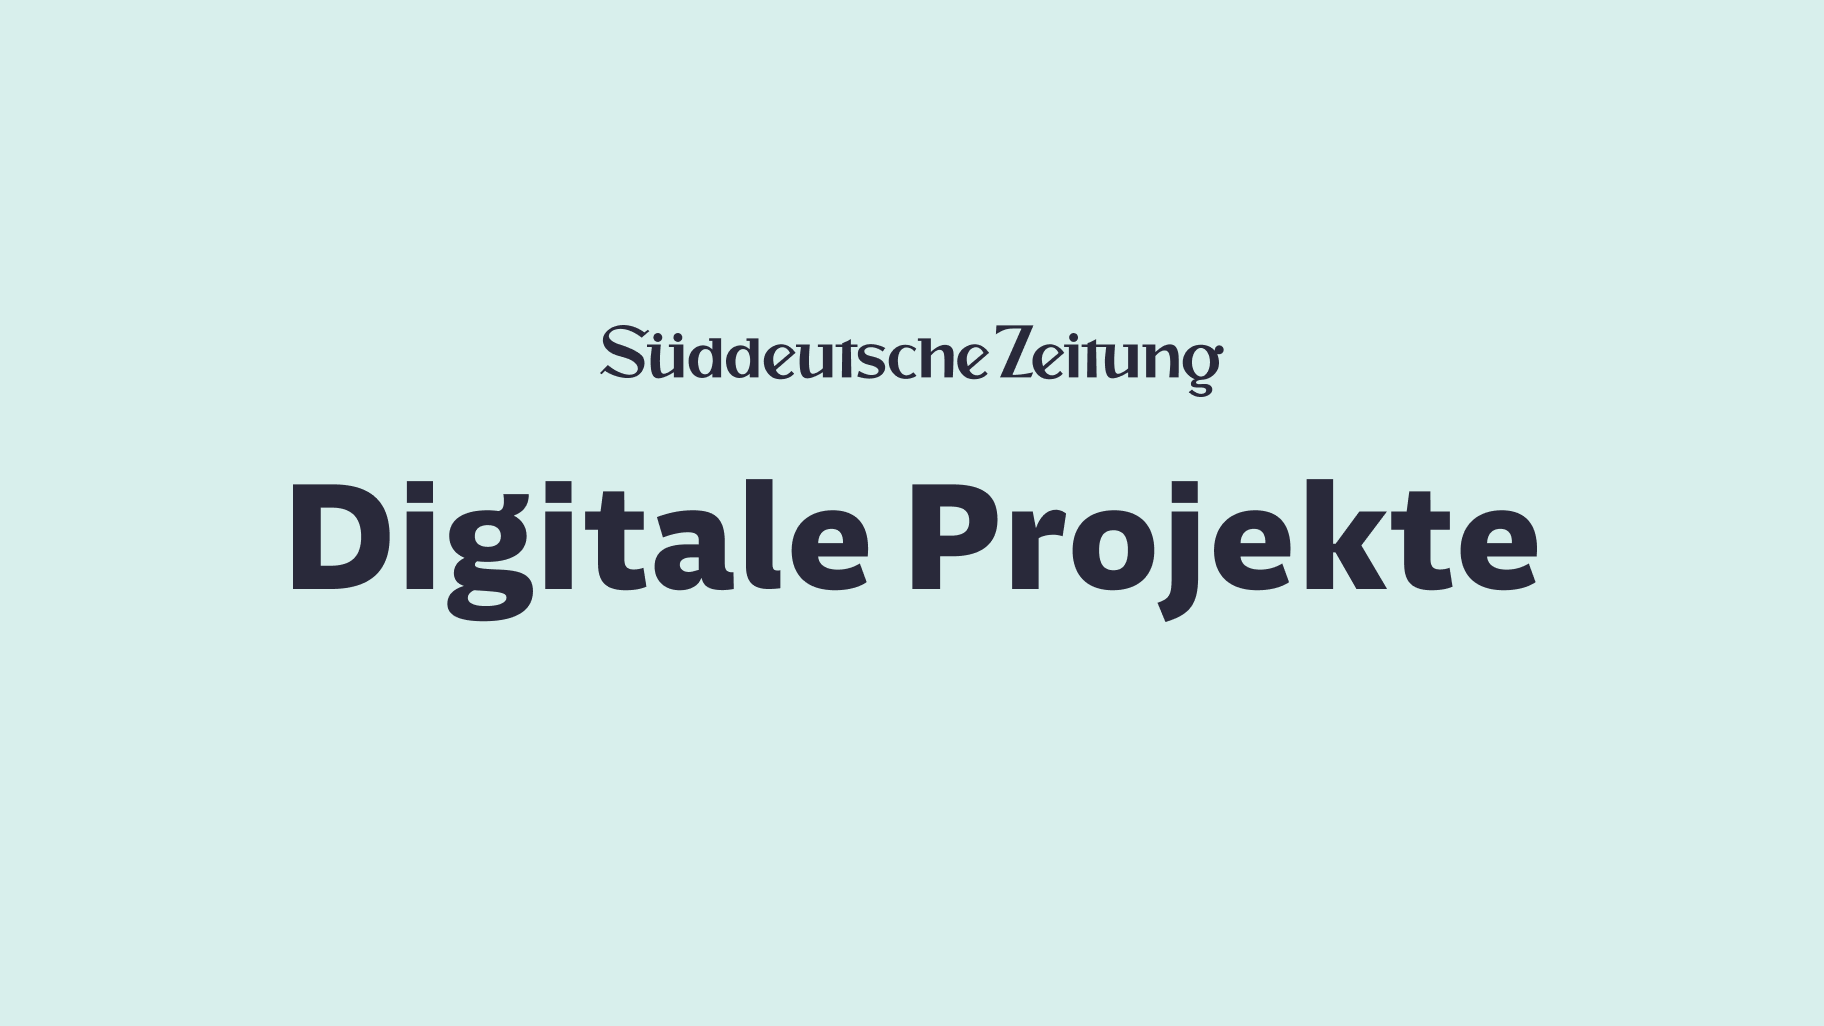 Digitale Projekte 2020